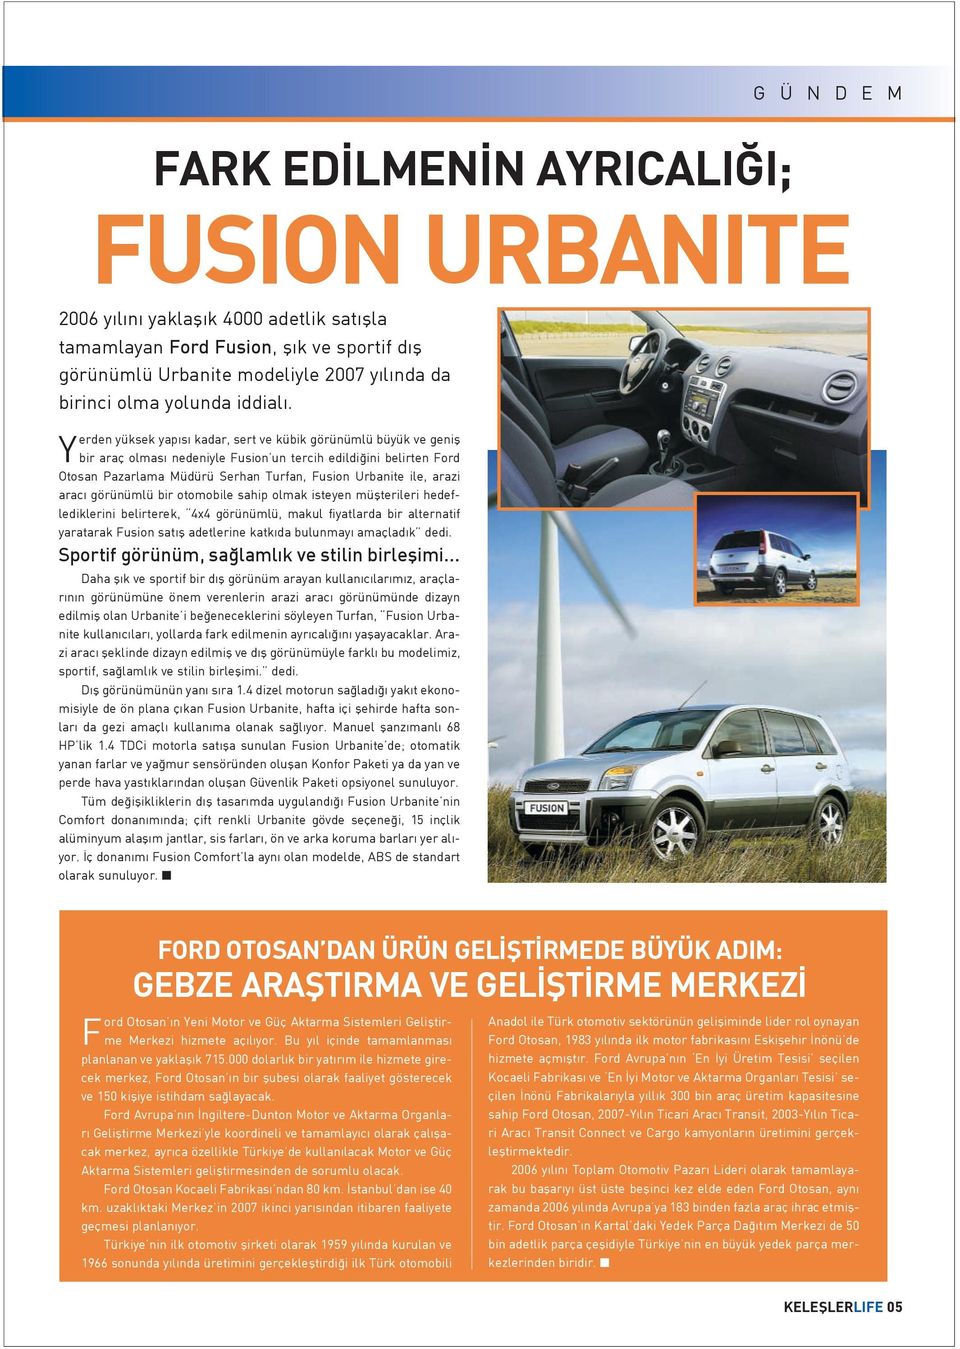 erden yüksek yap s kadar, sert ve kübik görünümlü büyük ve genifl Ybir araç olmas nedeniyle Fusion un tercih edildi ini belirten Ford Otosan Pazarlama Müdürü Serhan Turfan, Fusion Urbanite ile, arazi